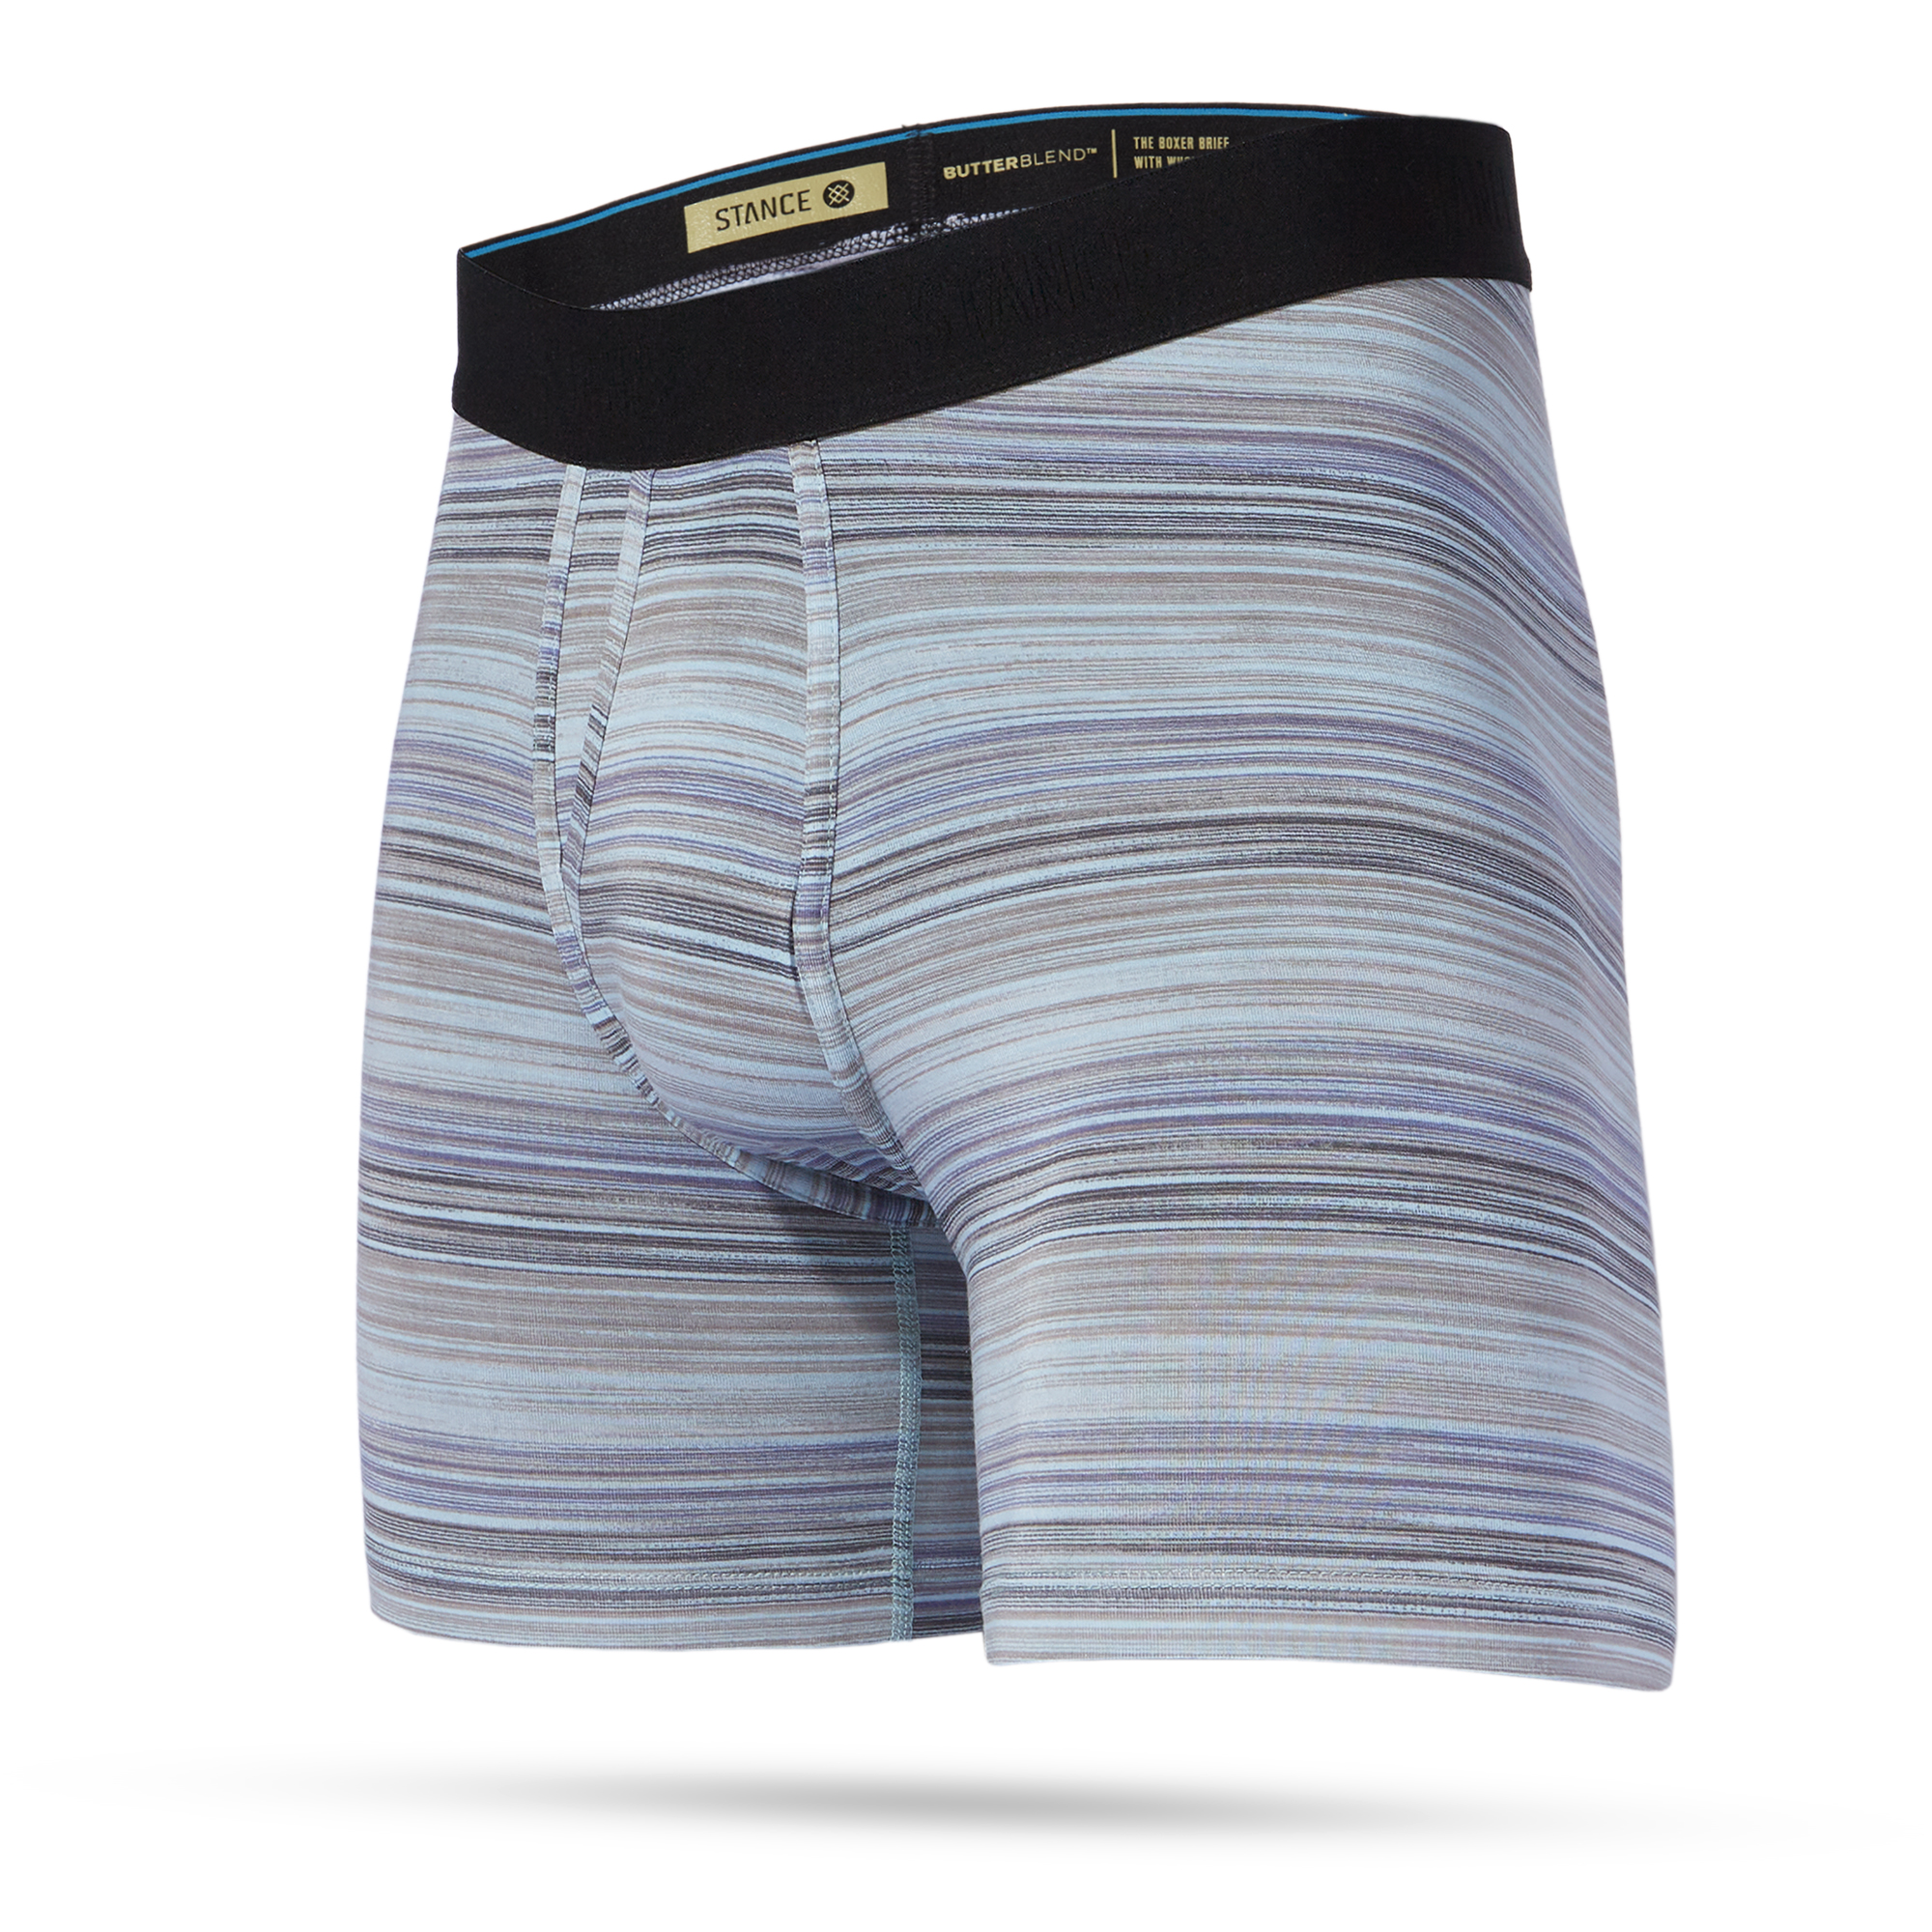 Stance Underwear Review - Men's Pouch Underwear - Cloth Karma